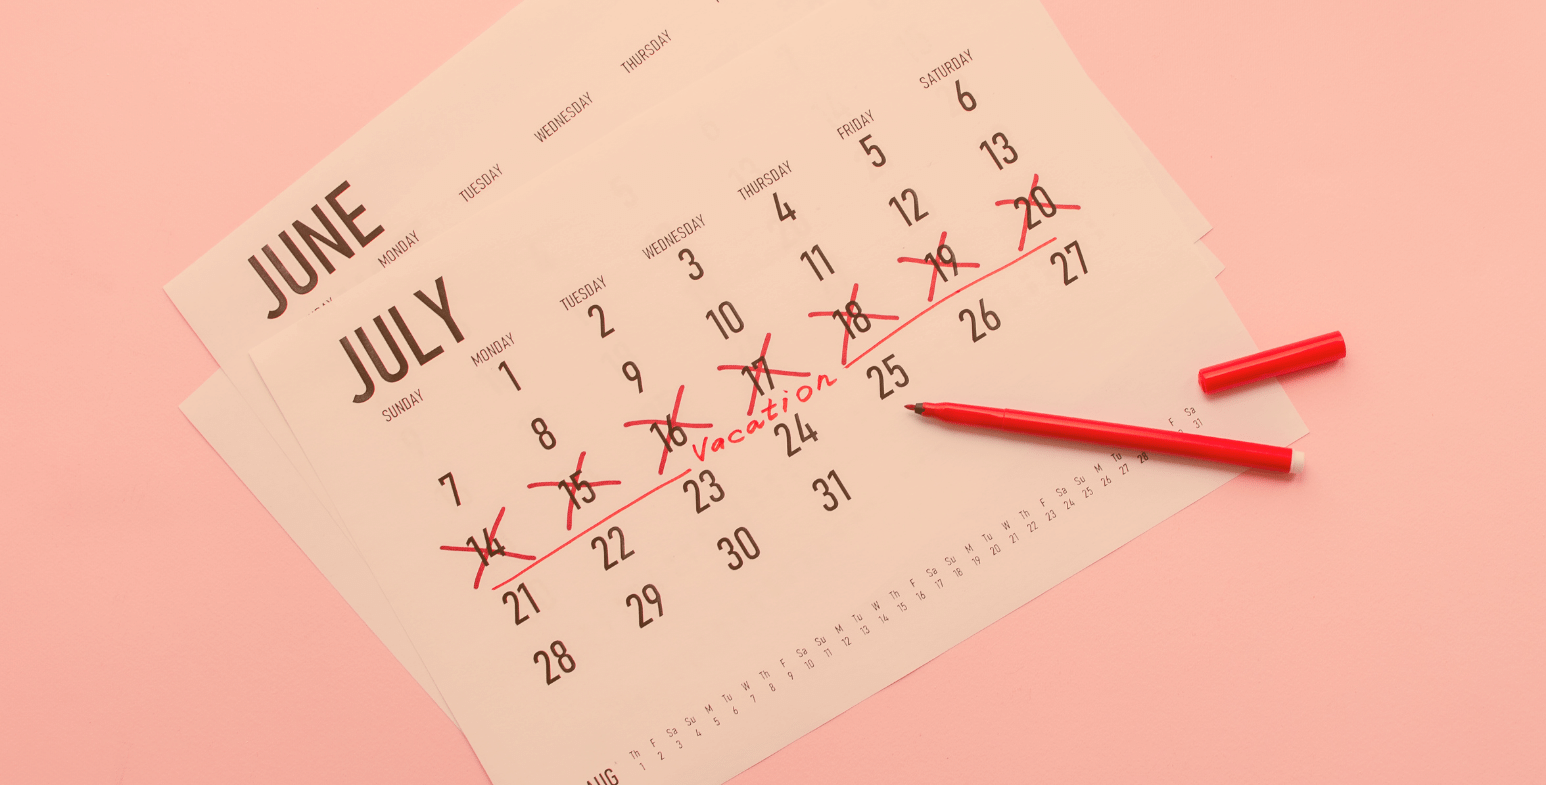 Kalendarz z zaznaczonym urlopem.